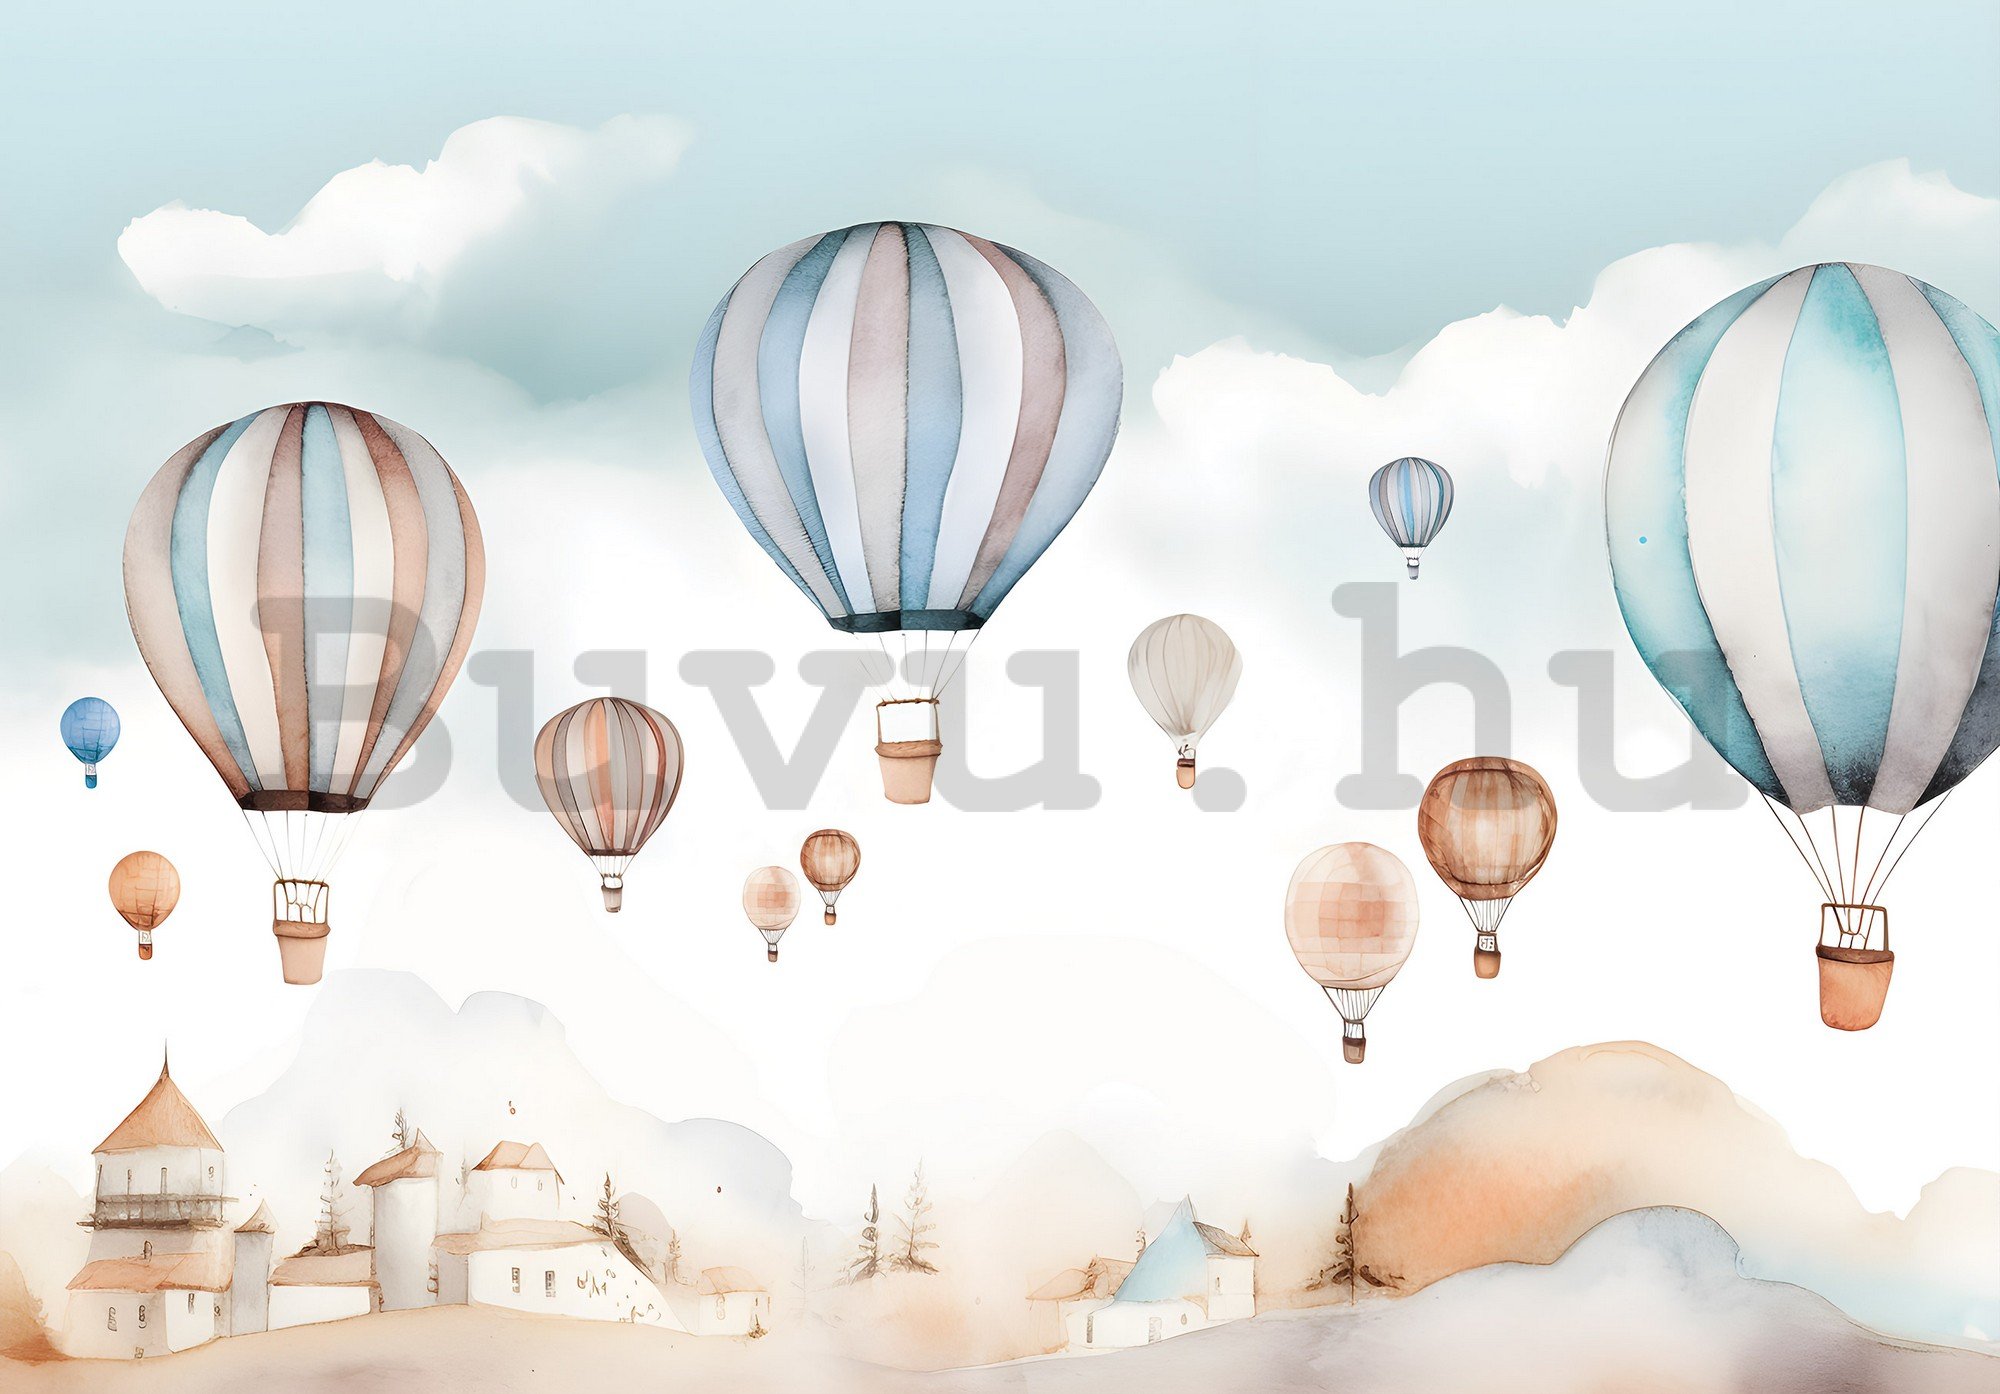 Vlies fotótapéta: For kids fairytale watercolour balloons - 416x254 cm